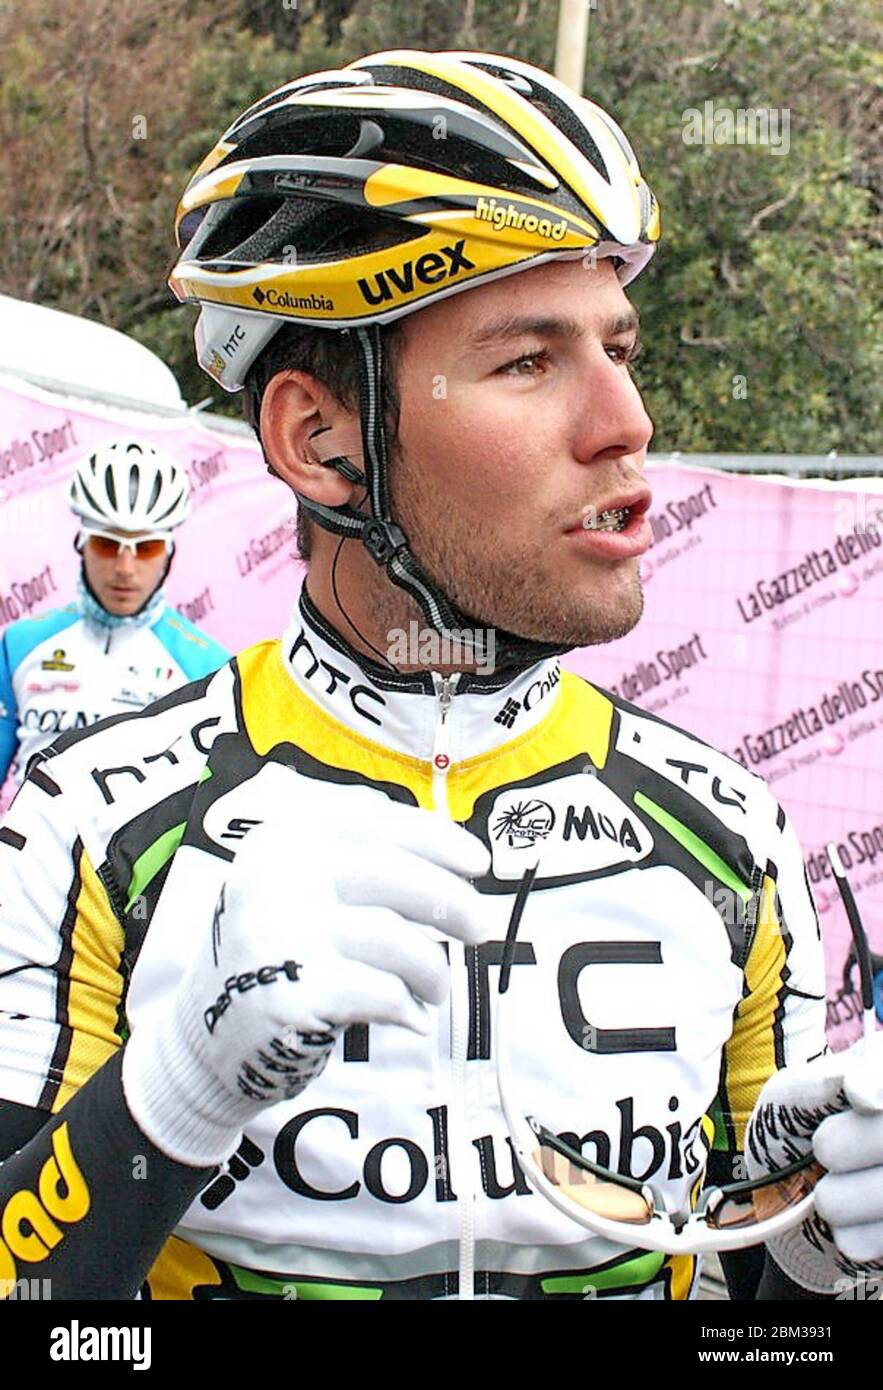 Mark Cavendish di HTC-Columbia durante la gara ciclistica Tirreno - Adriatico 2010,tappa 1,Livourne - Rosignano Solvay(148Km) il 10 marzo 2010 a Livourne Italie - Foto Laurent Lairys / DPPI Foto Stock